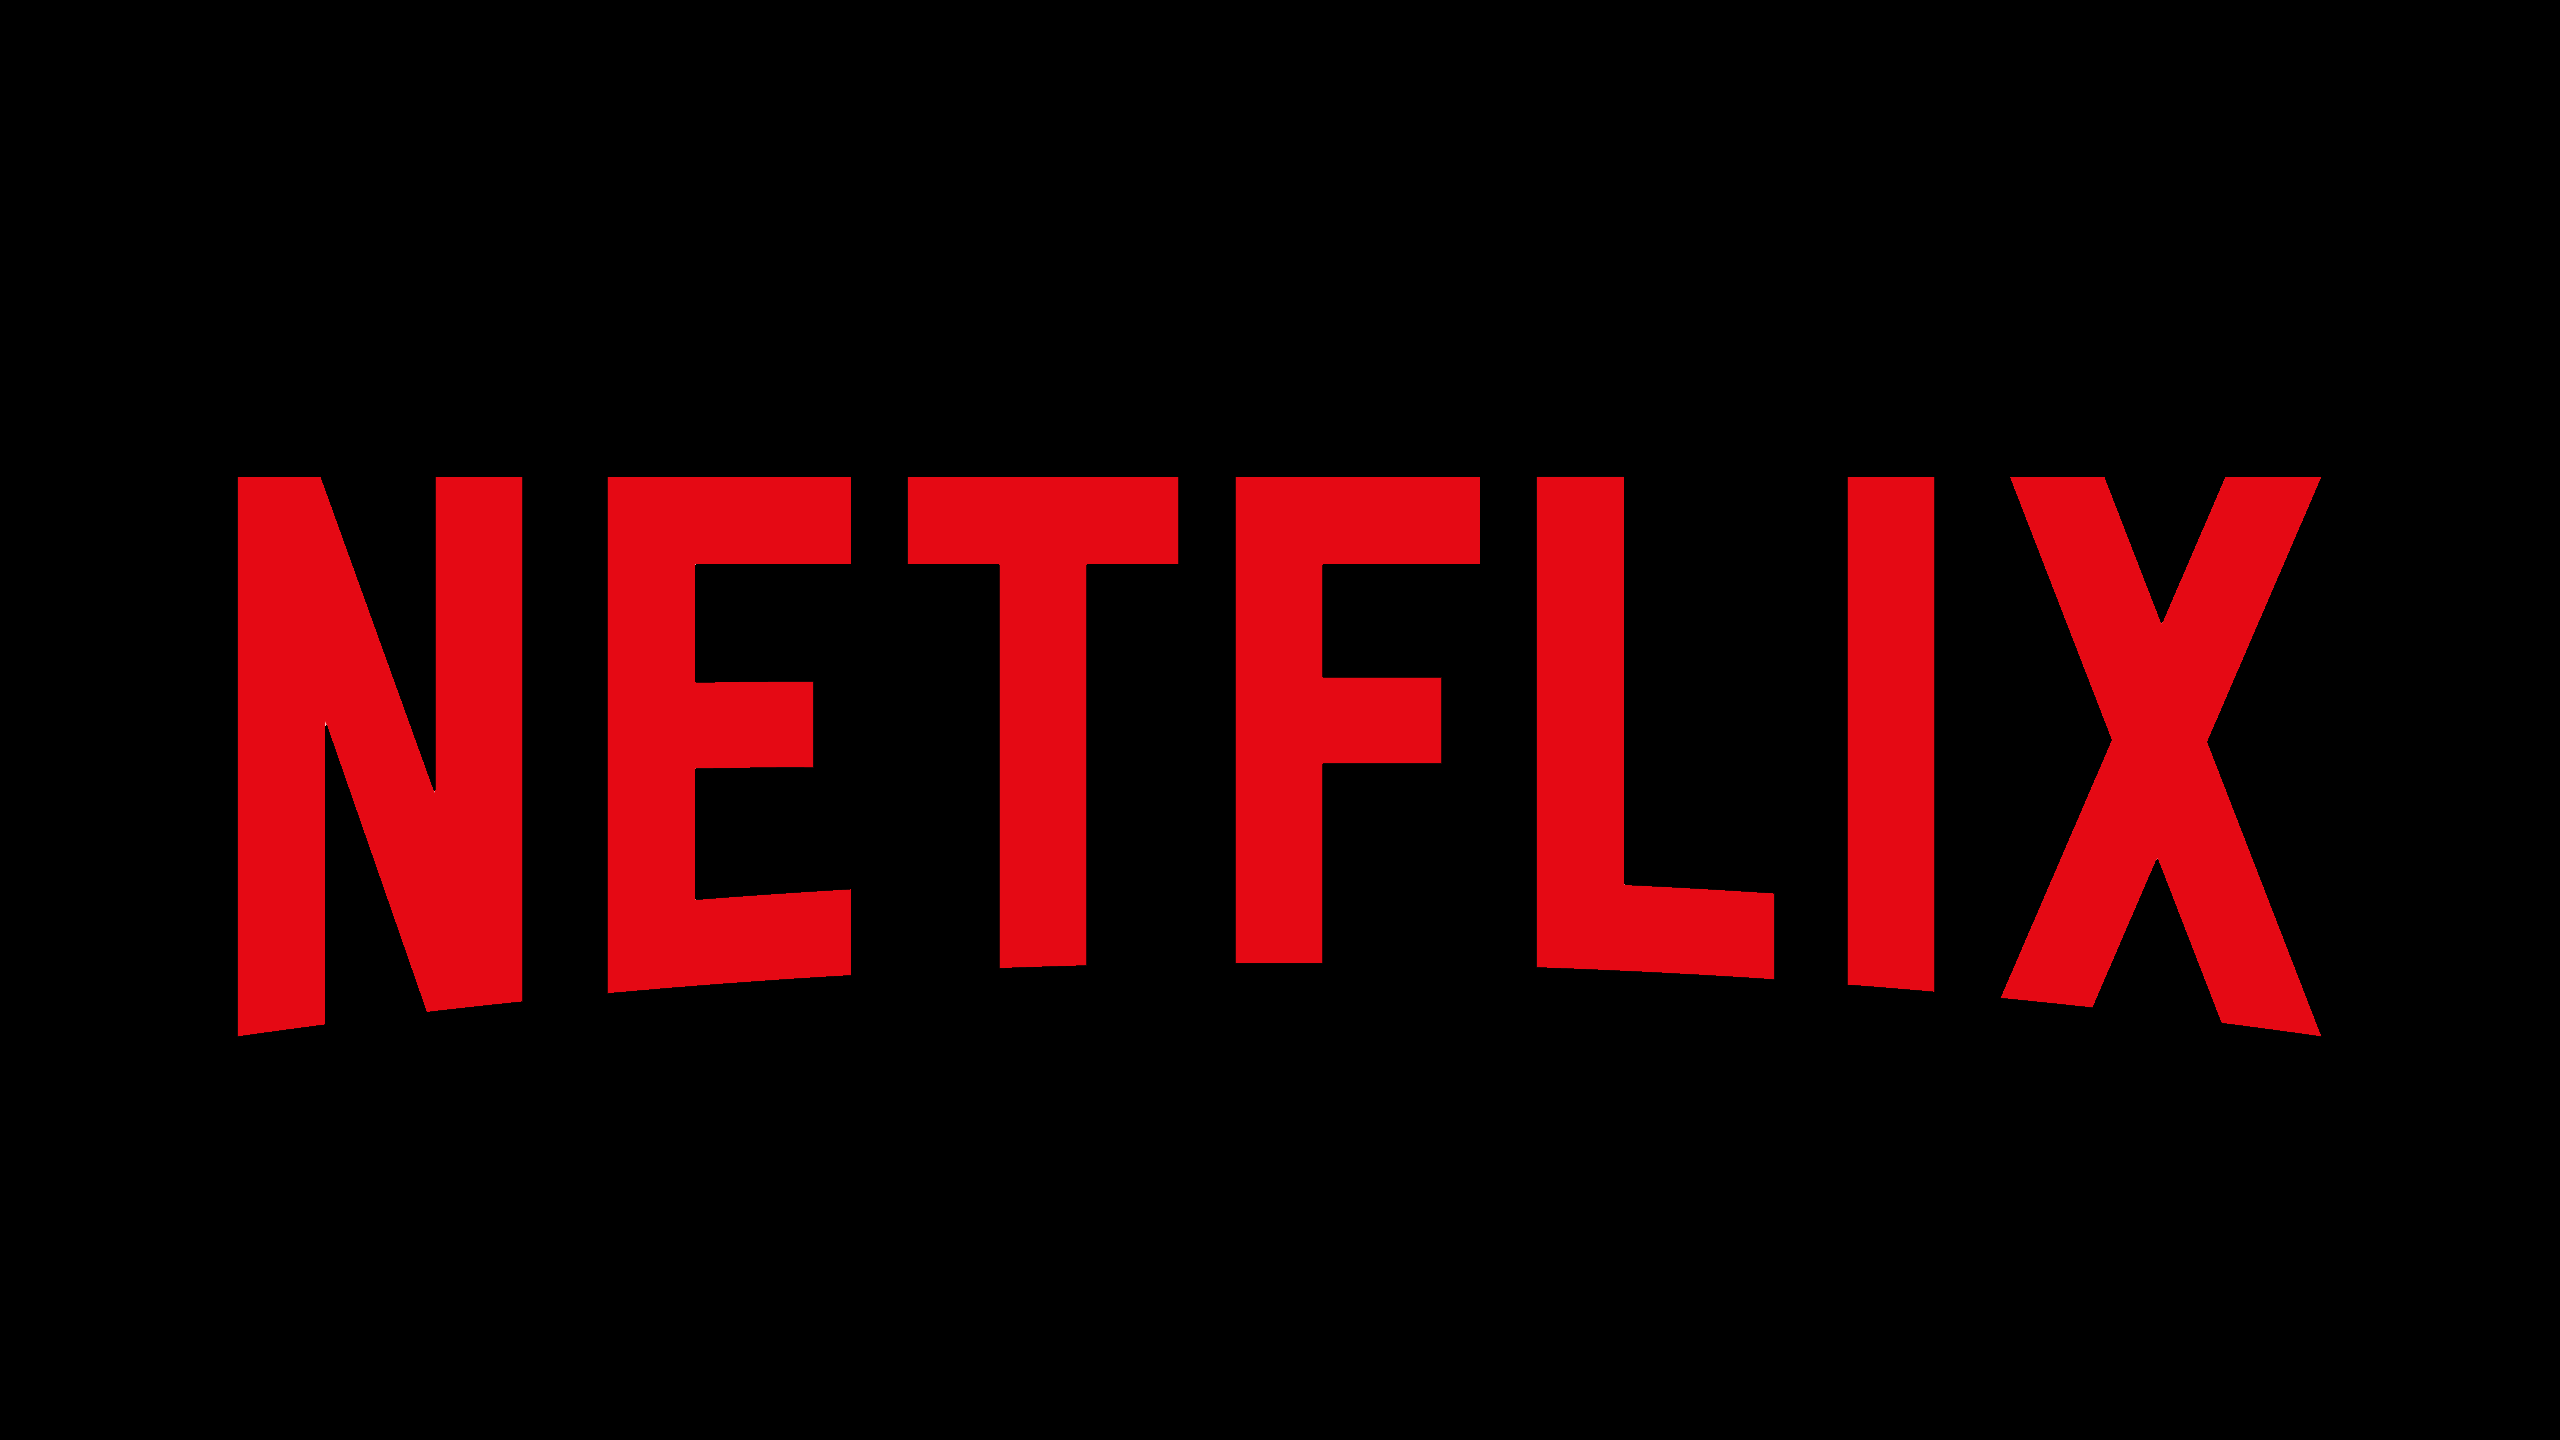 Netflix mobilspelplattform expanderar till Spanien och Italien!